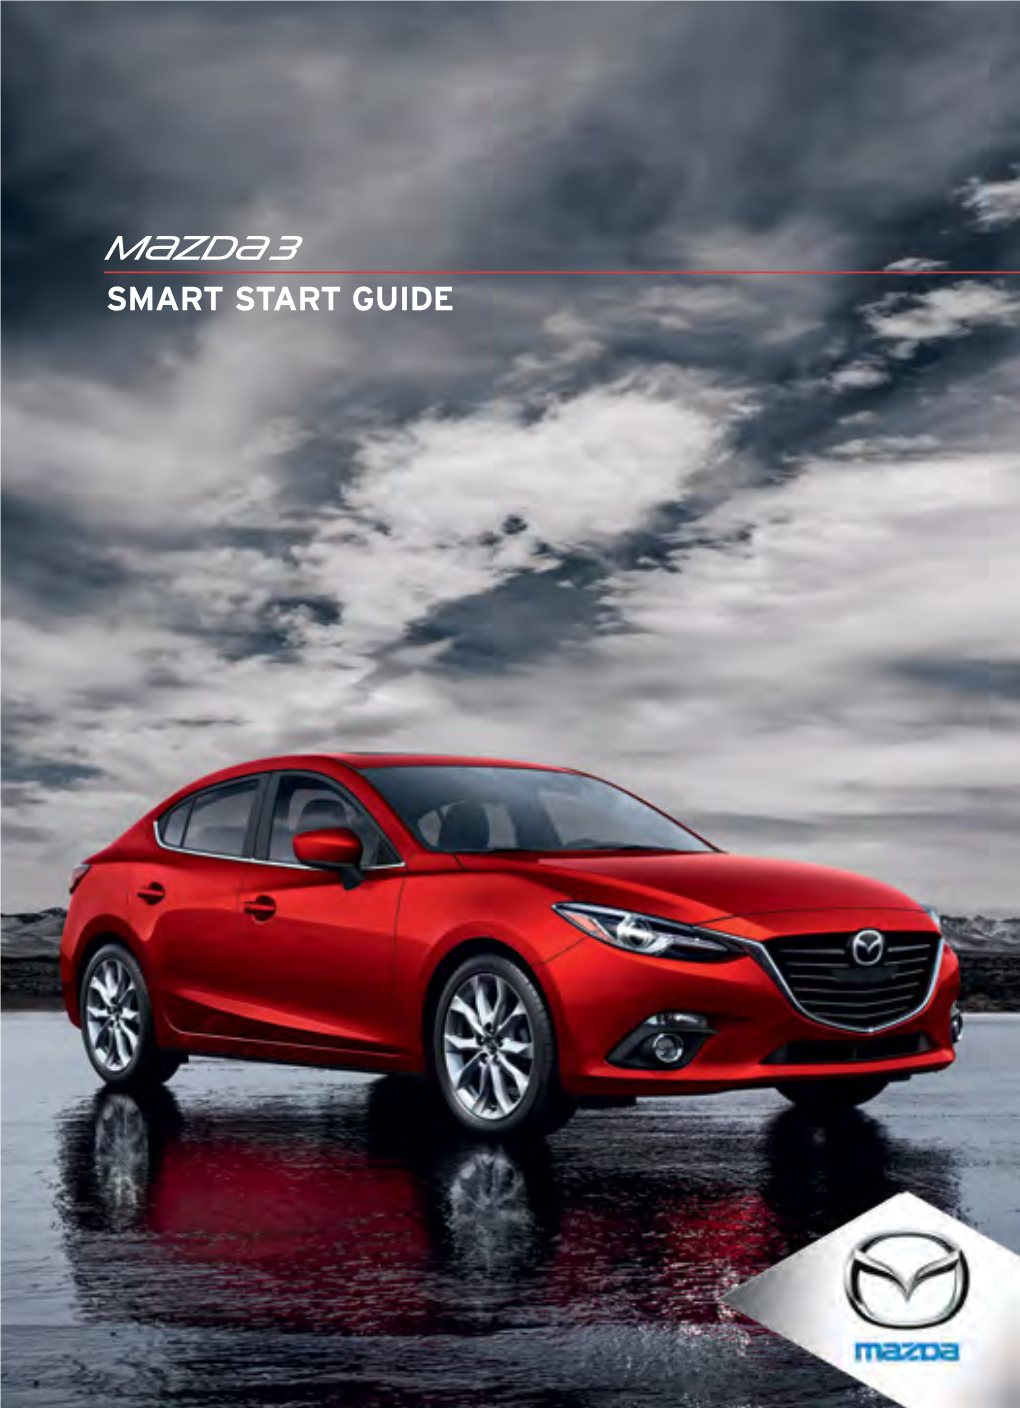 2015 Mazda3 Smart Start Guide